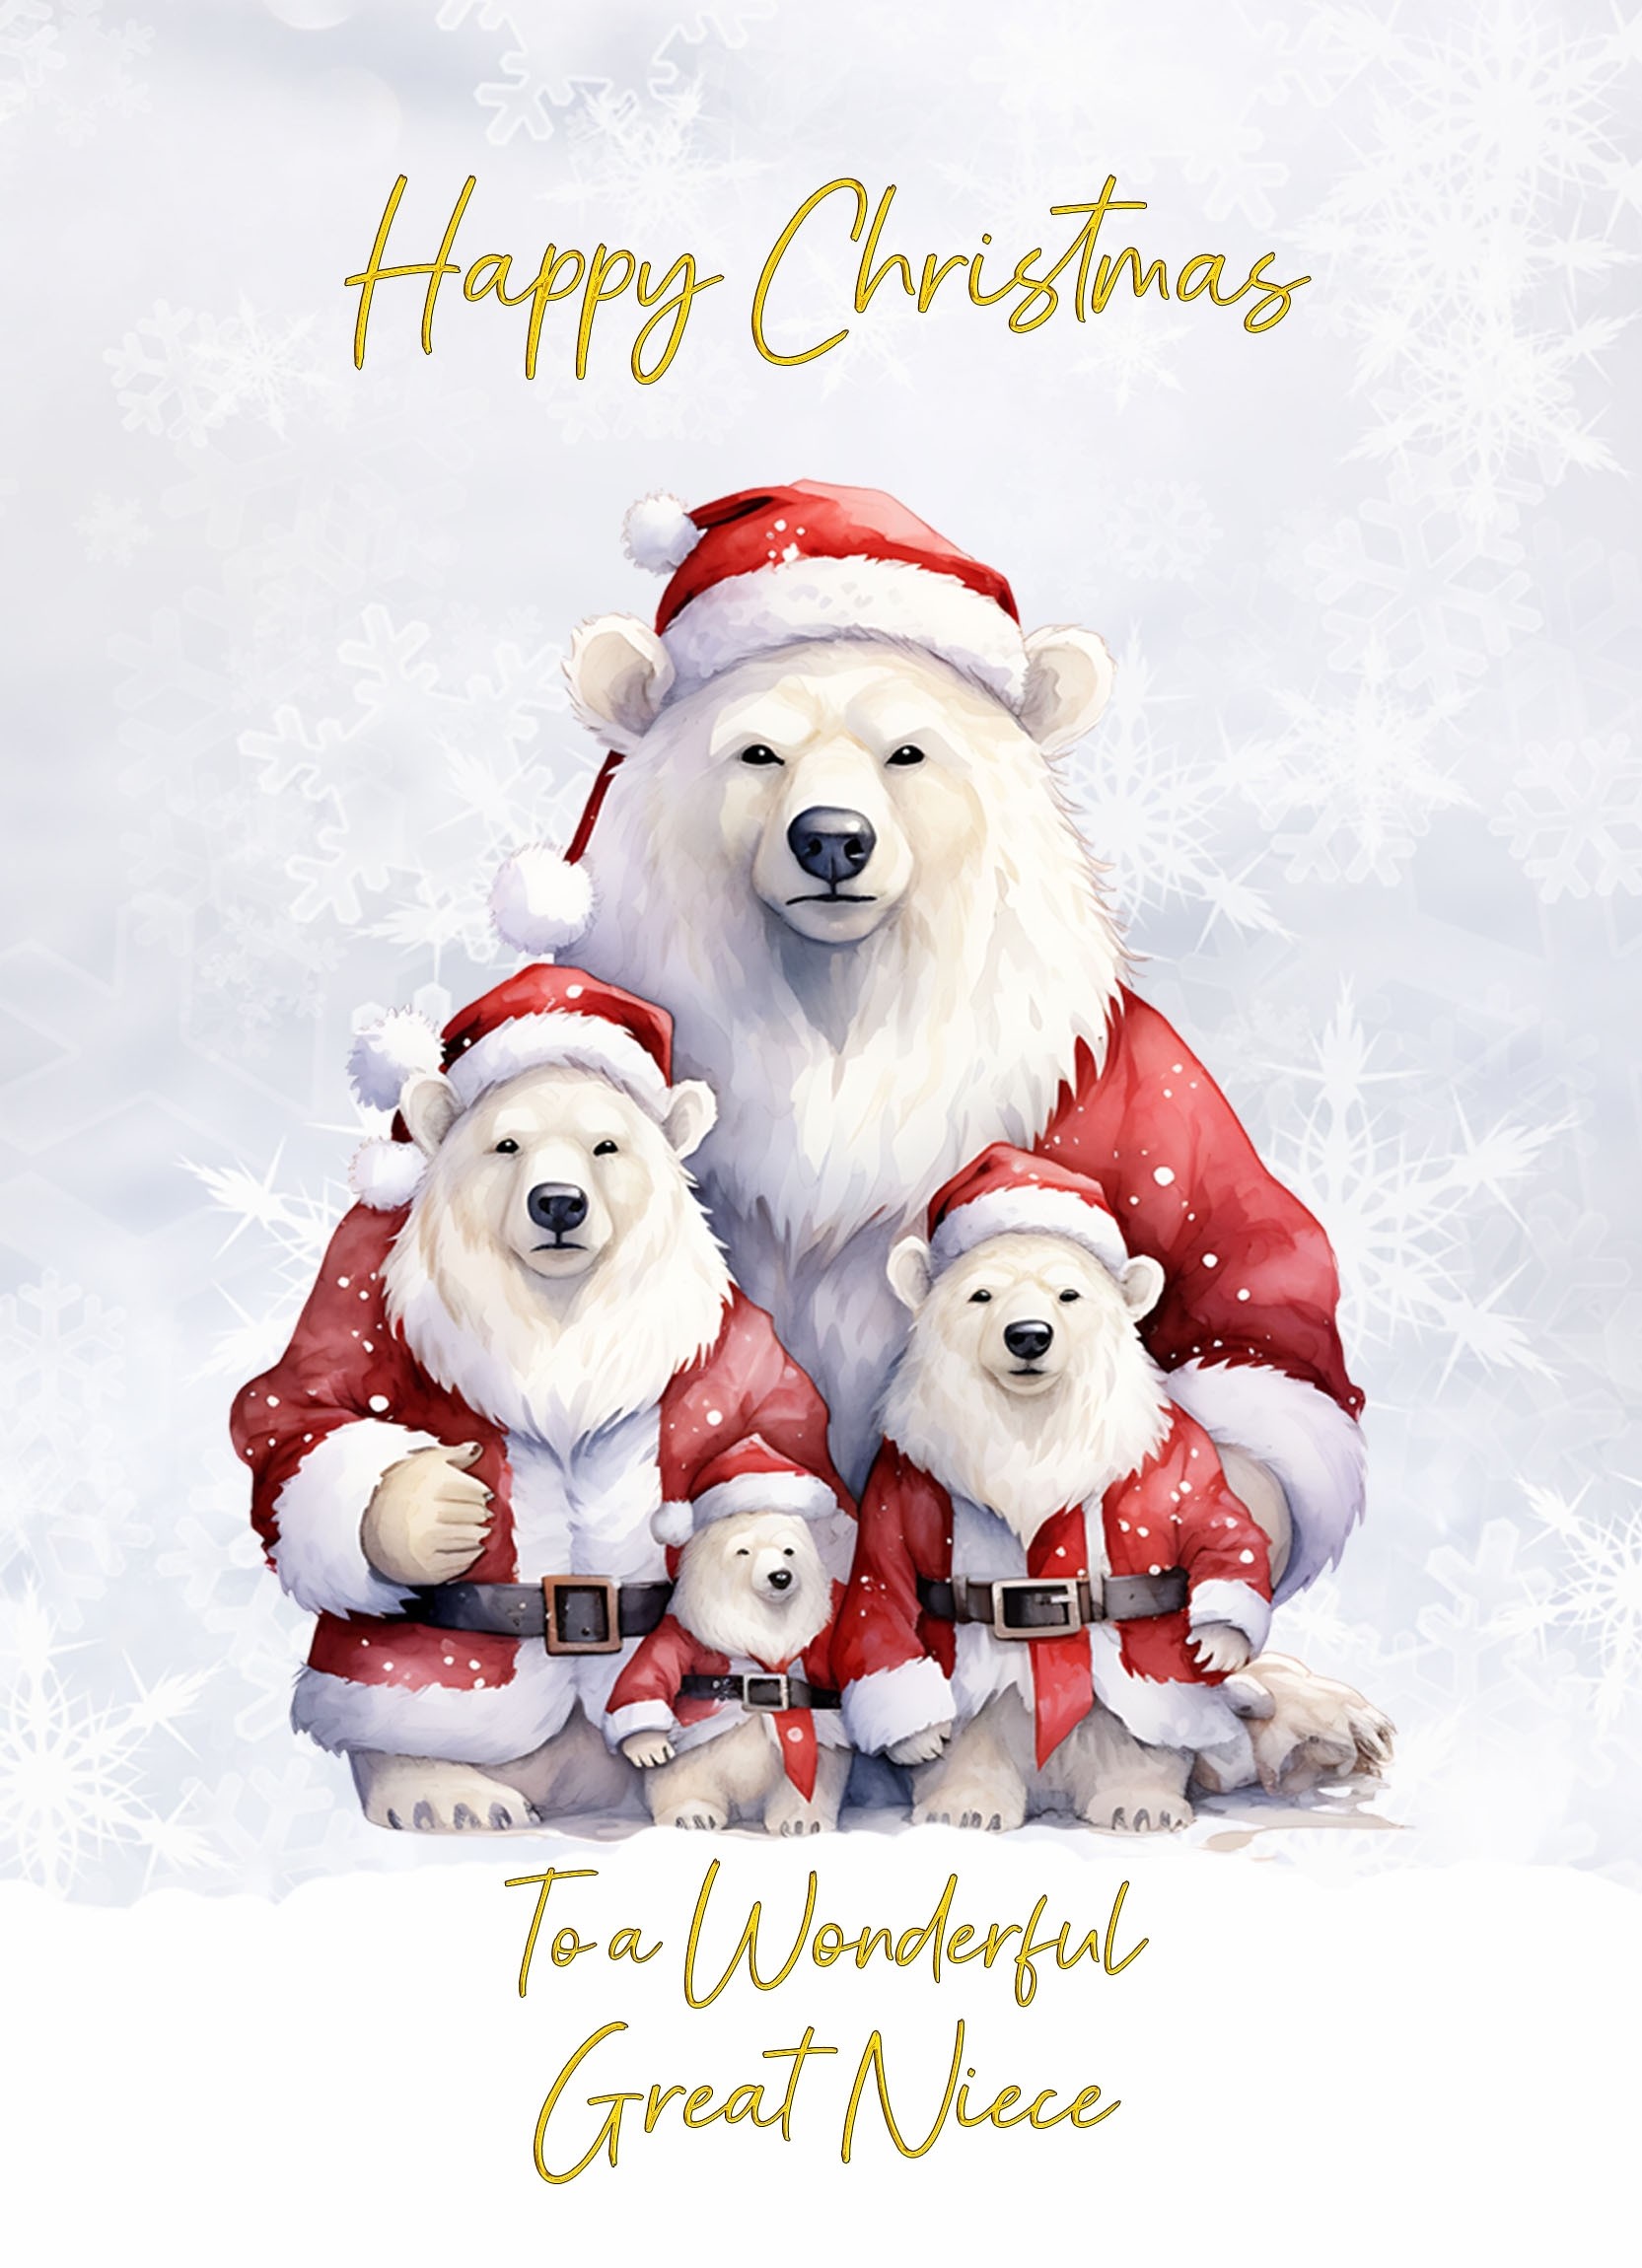 Christmas Card For Great Niece (Polar Bear Family Art)